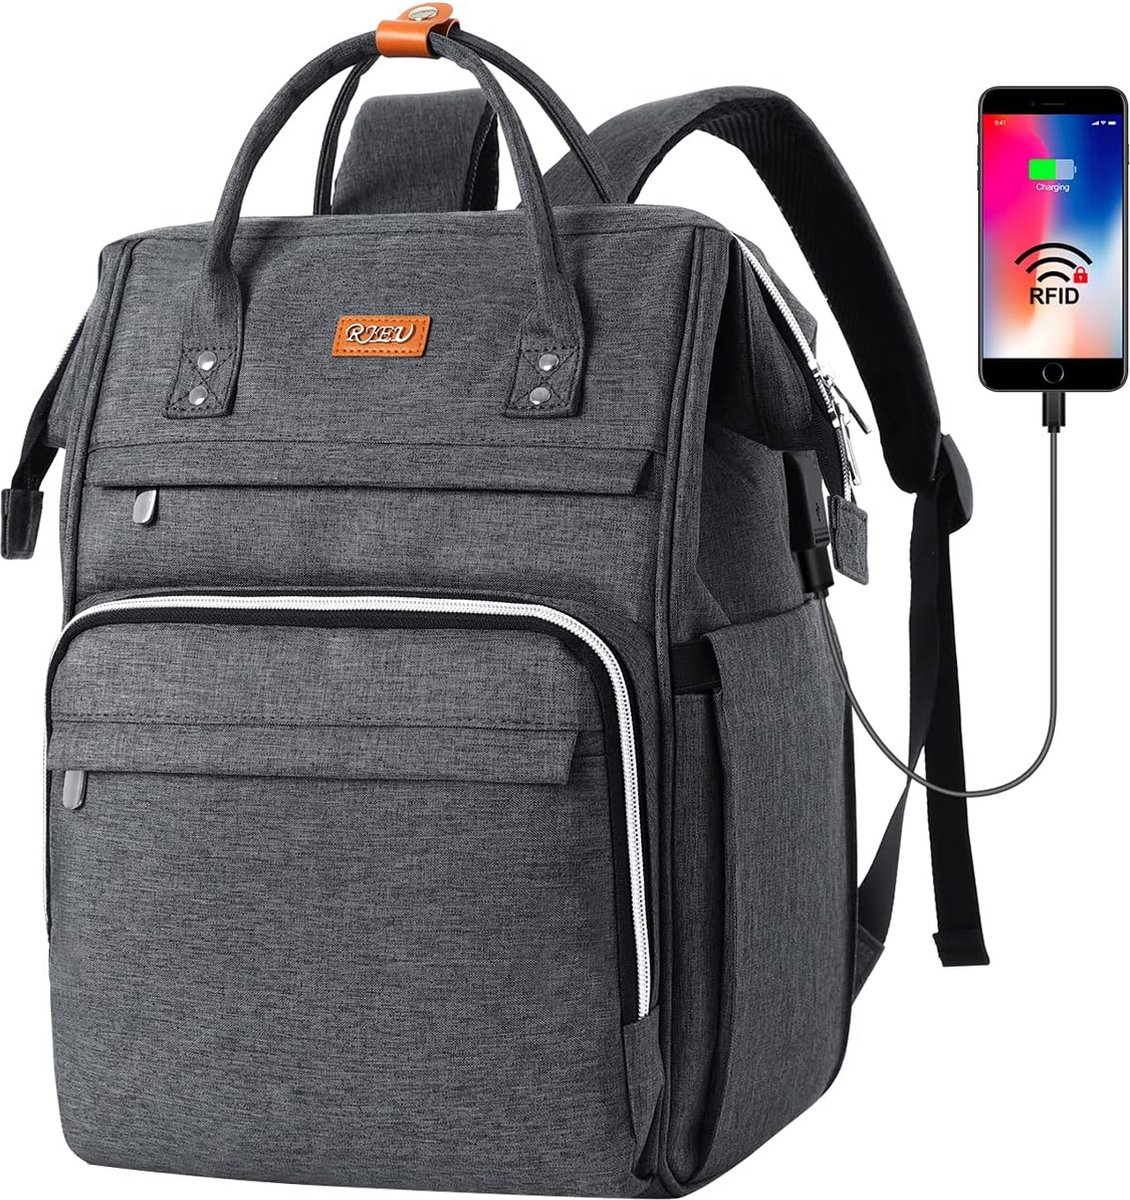 Rugzak met USB-poort - Grijs - 17.3 inch laptoptas - Voor school, werk, reizen - Rugtas met veel opbergruimte